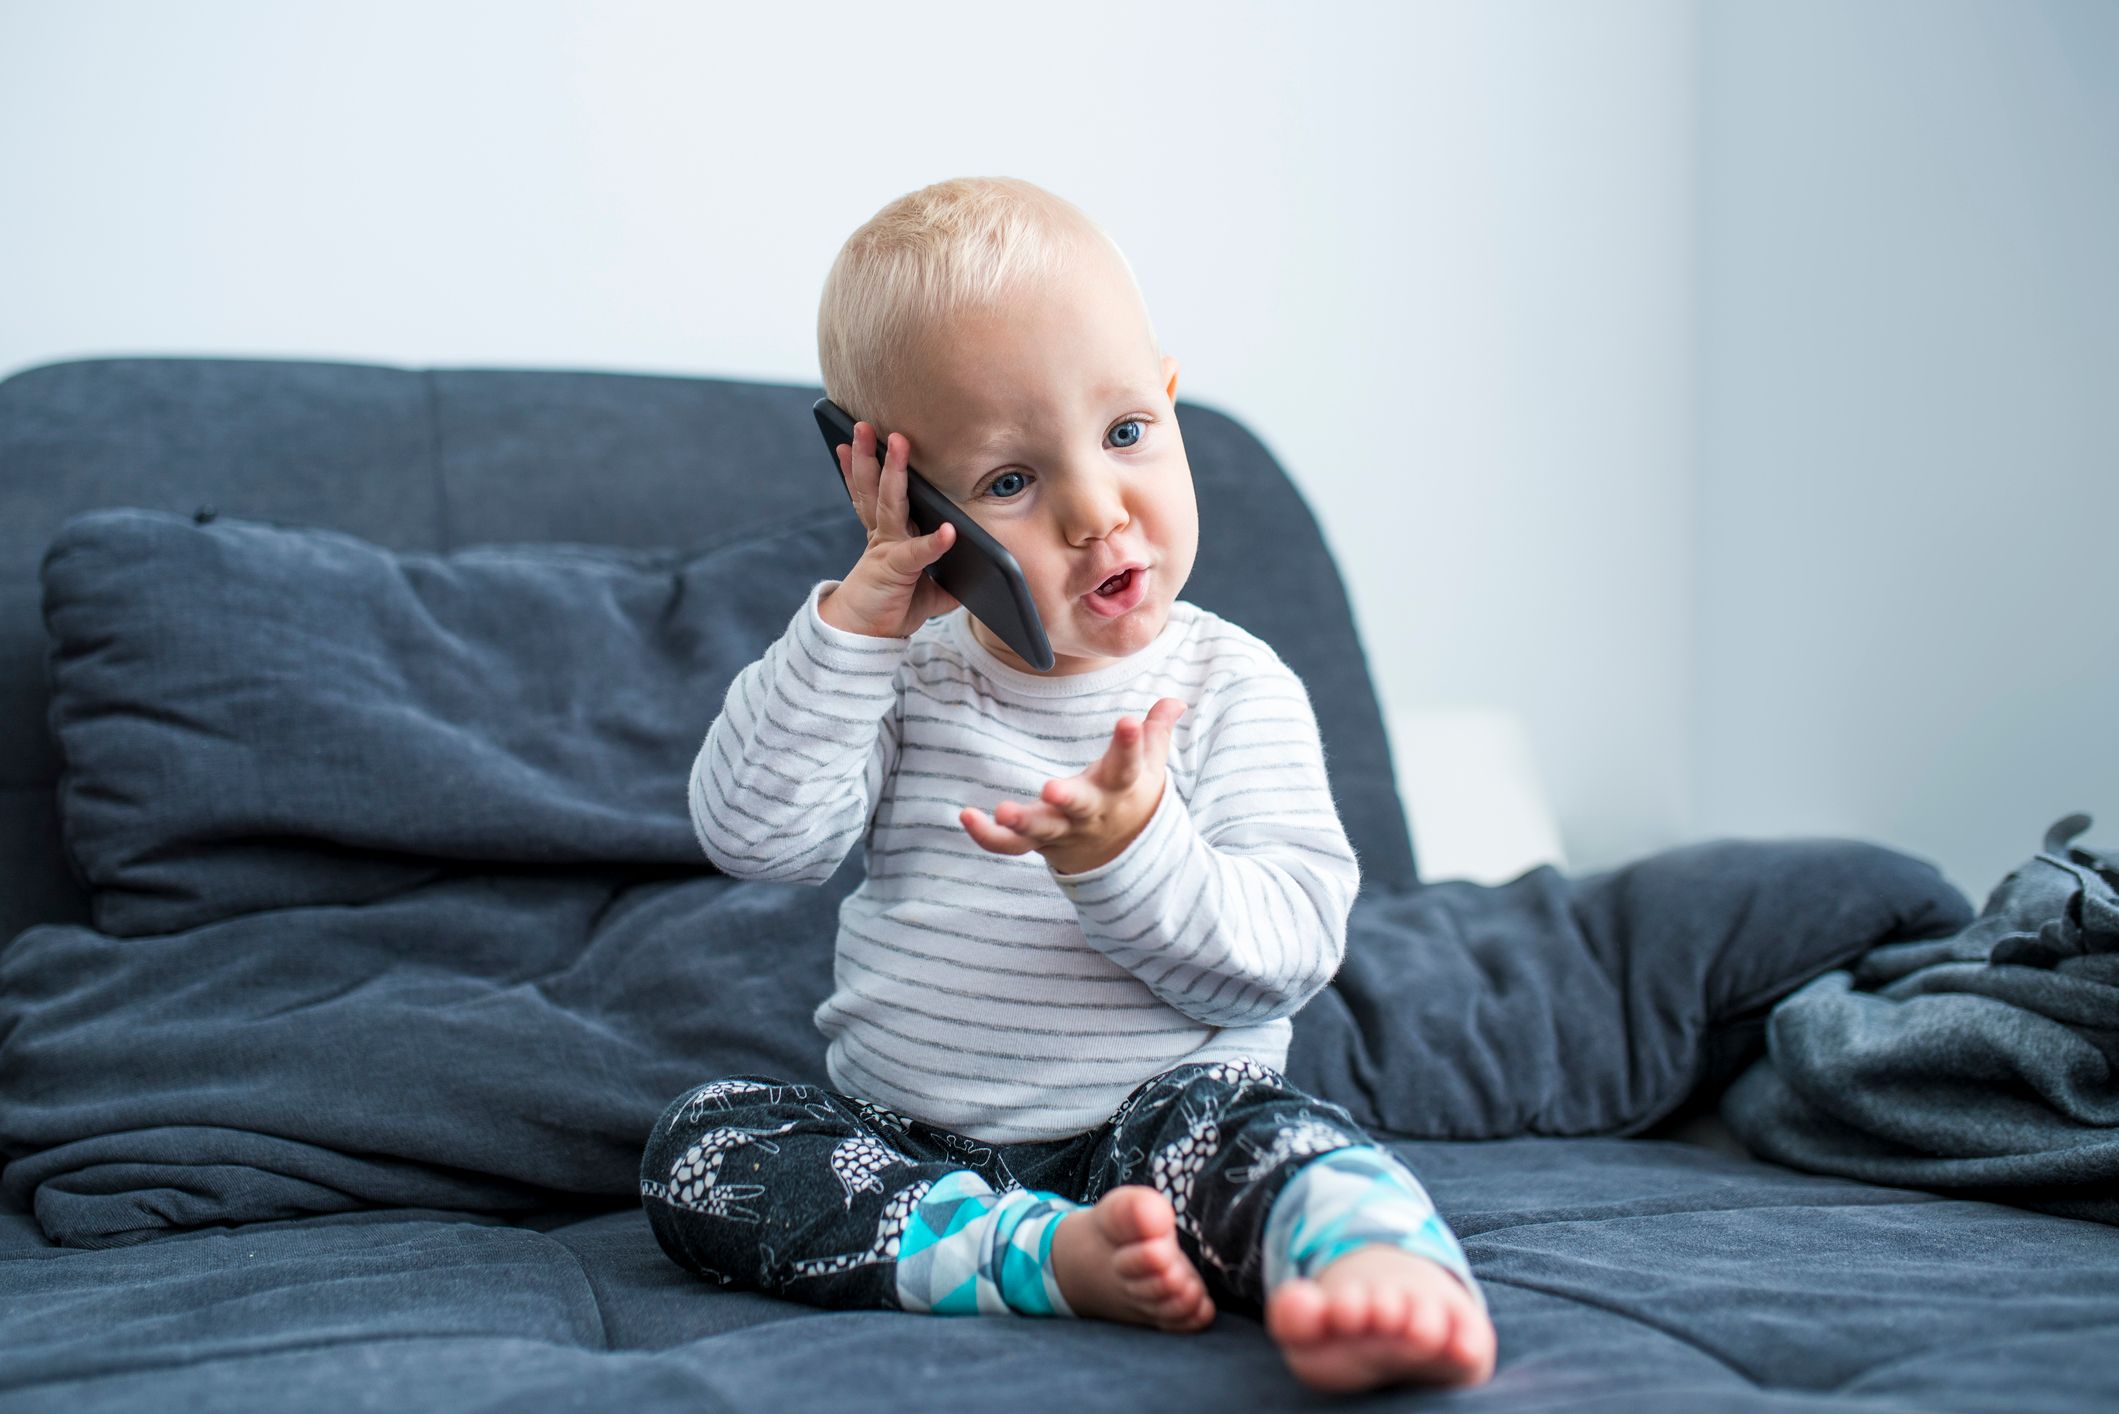 Ein Kleinkind, das sich ein Handy ans Ohr hält. Der Junge sitzt auf einem Sofa. | Quelle: Getty Images